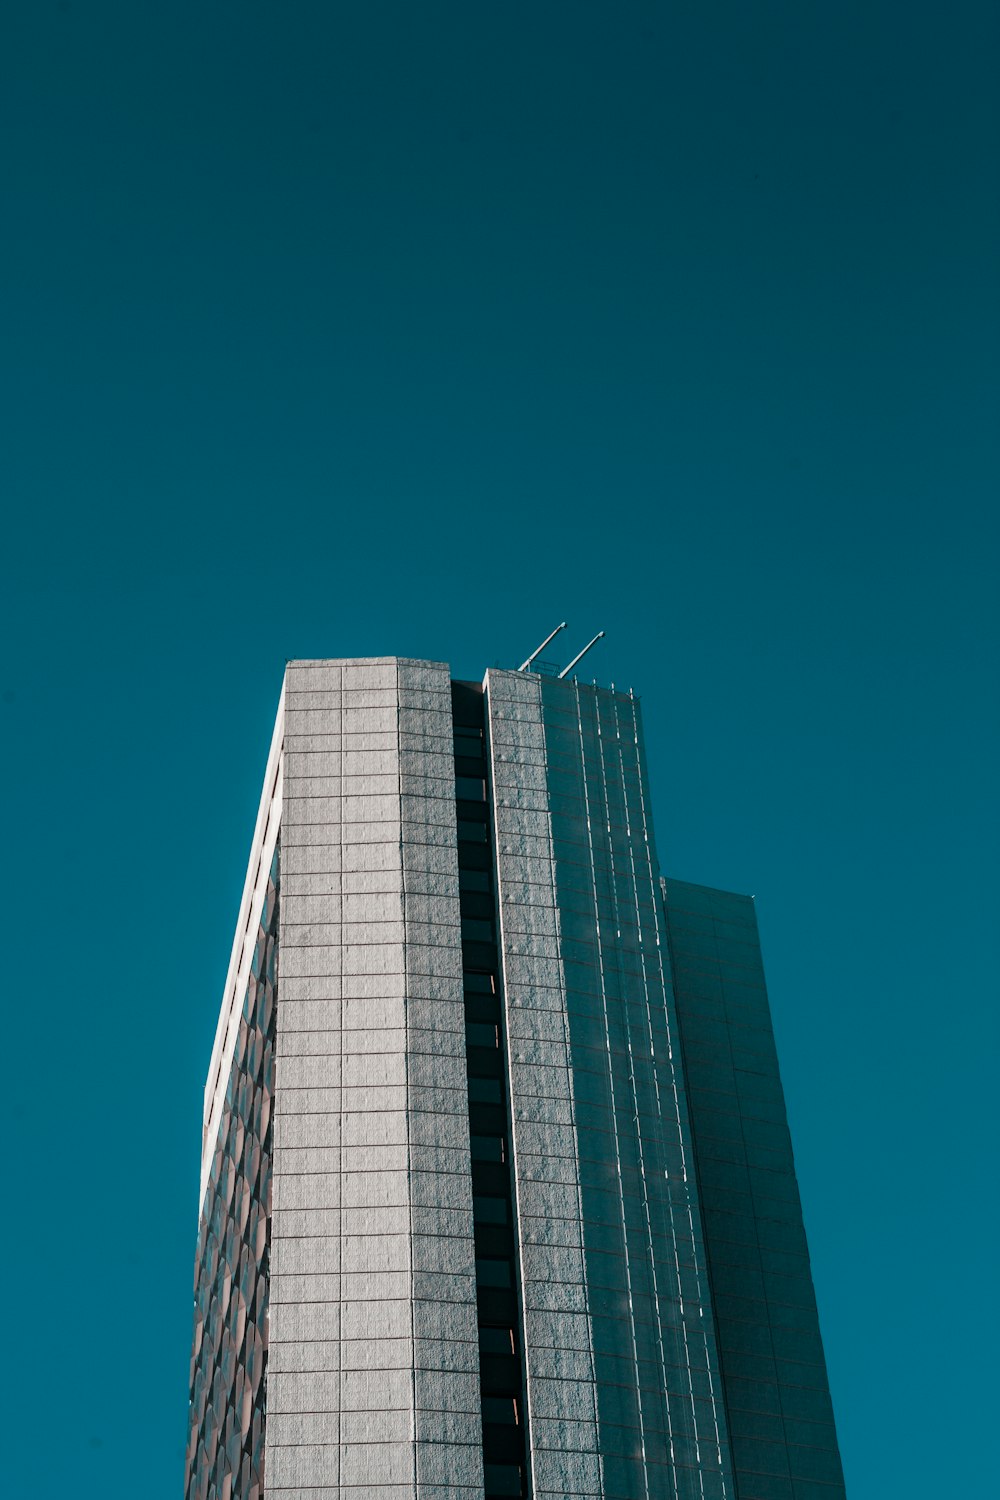 gray building